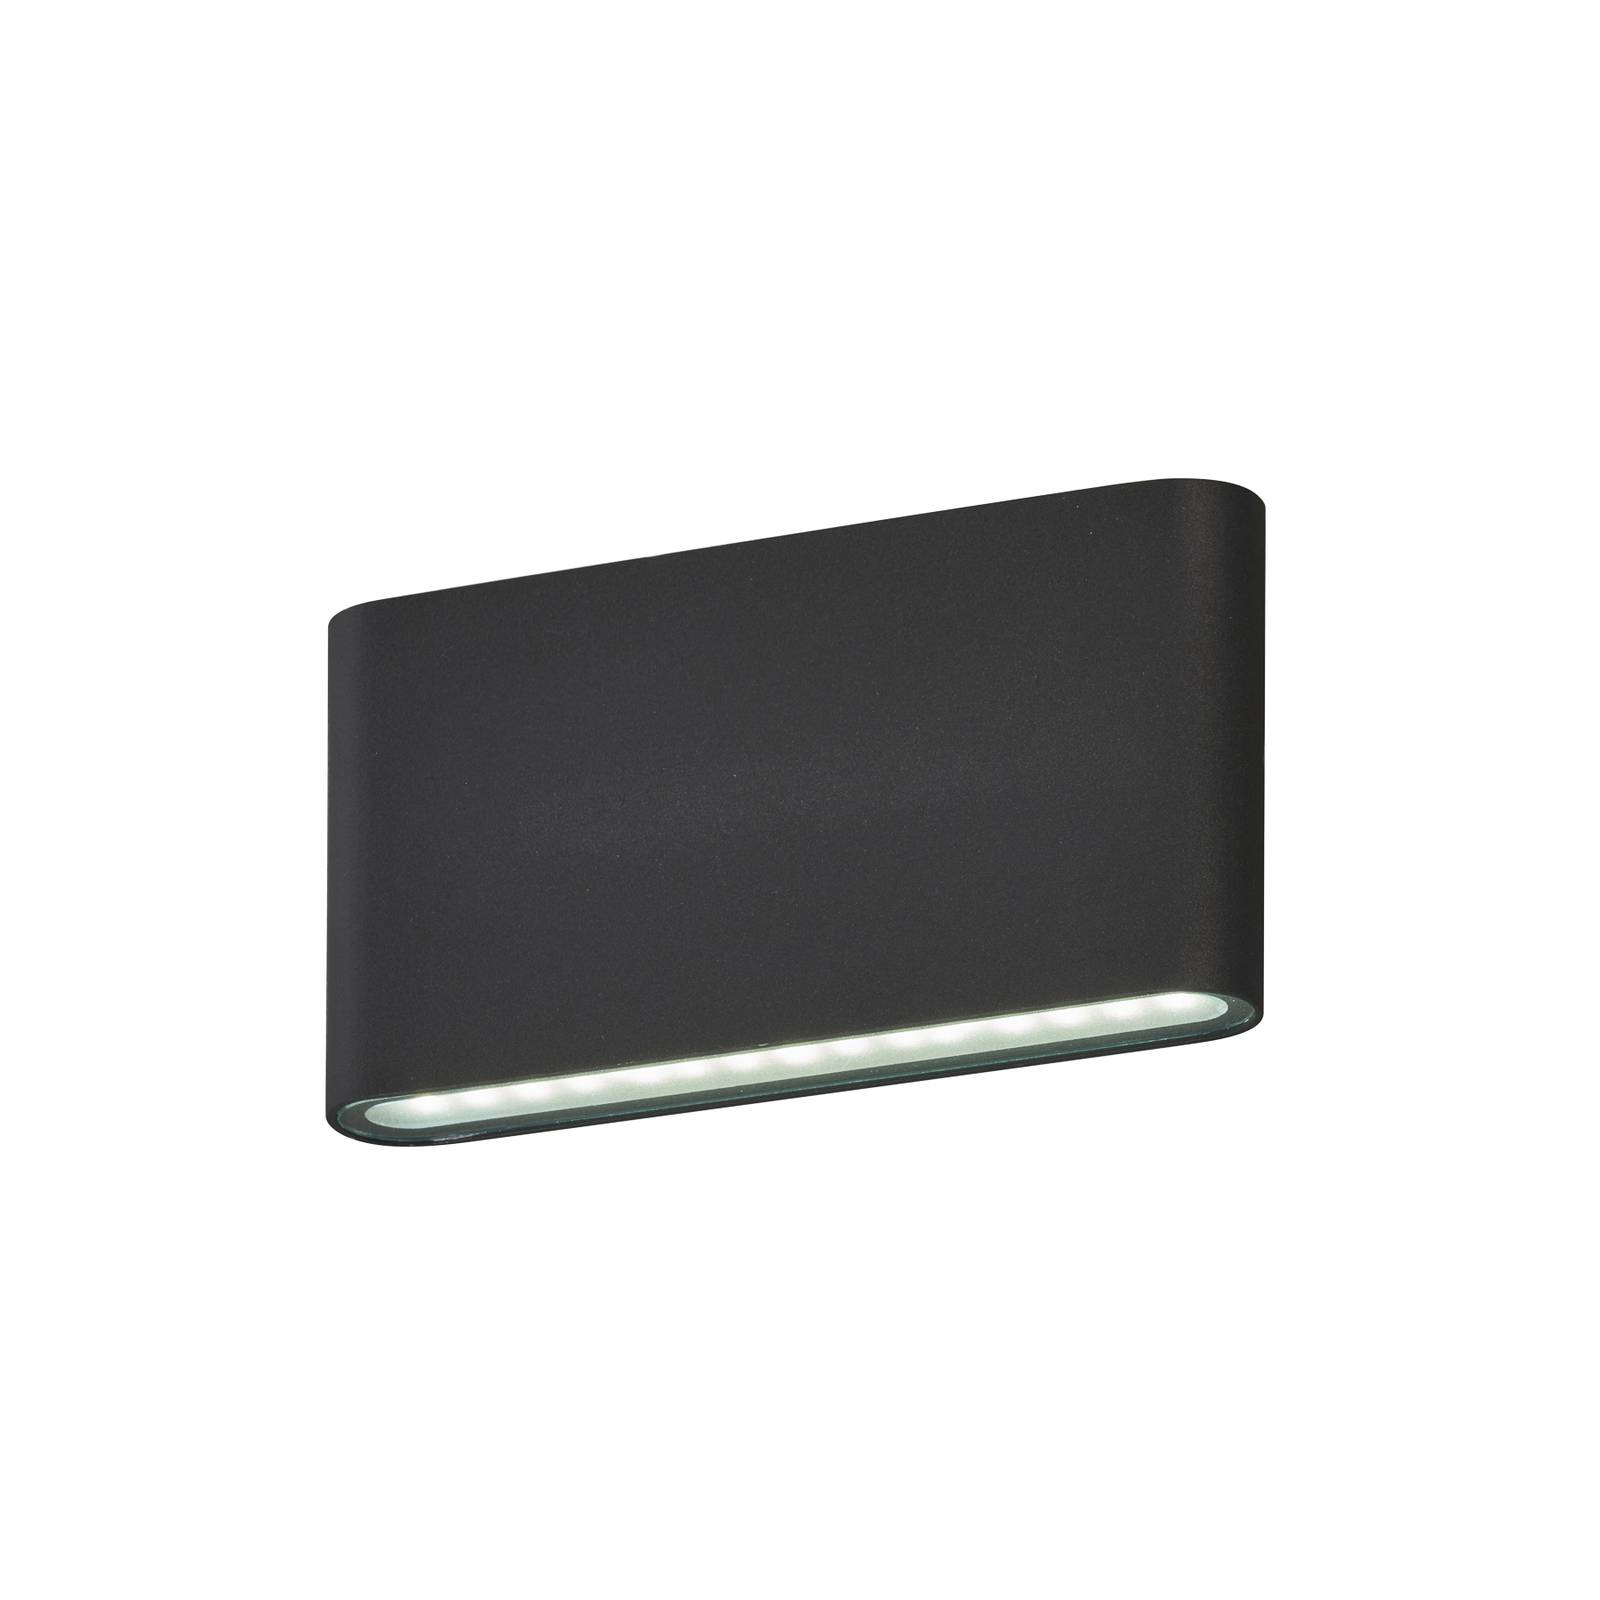 Vonkajšie nástenné svietidlo Scone LED, čierne, šírka 17,5 cm, 2 svetlá.